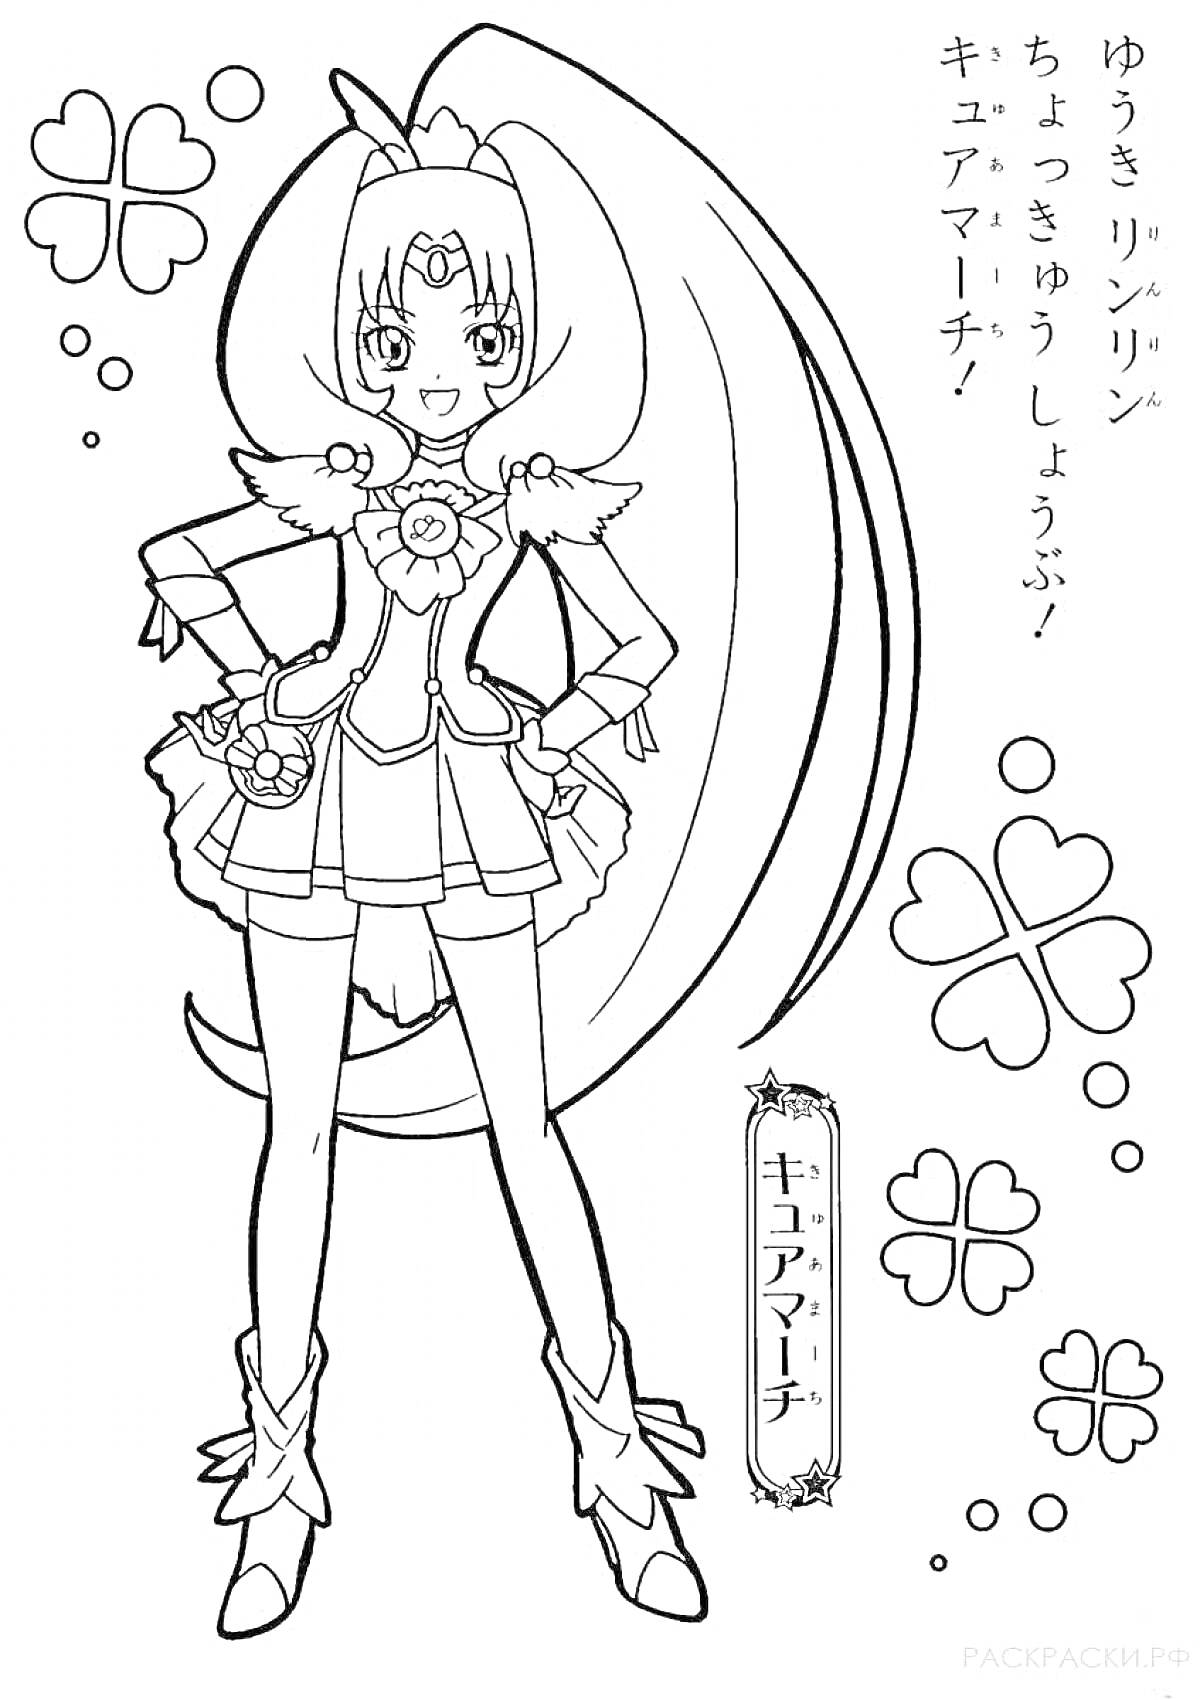 Раскраска Девочка в костюме с бантами, медальоном и пушистыми украшениями, с длинными распущенными волосами. Цветочные и сердечные элементы на заднем плане. Японский текст.